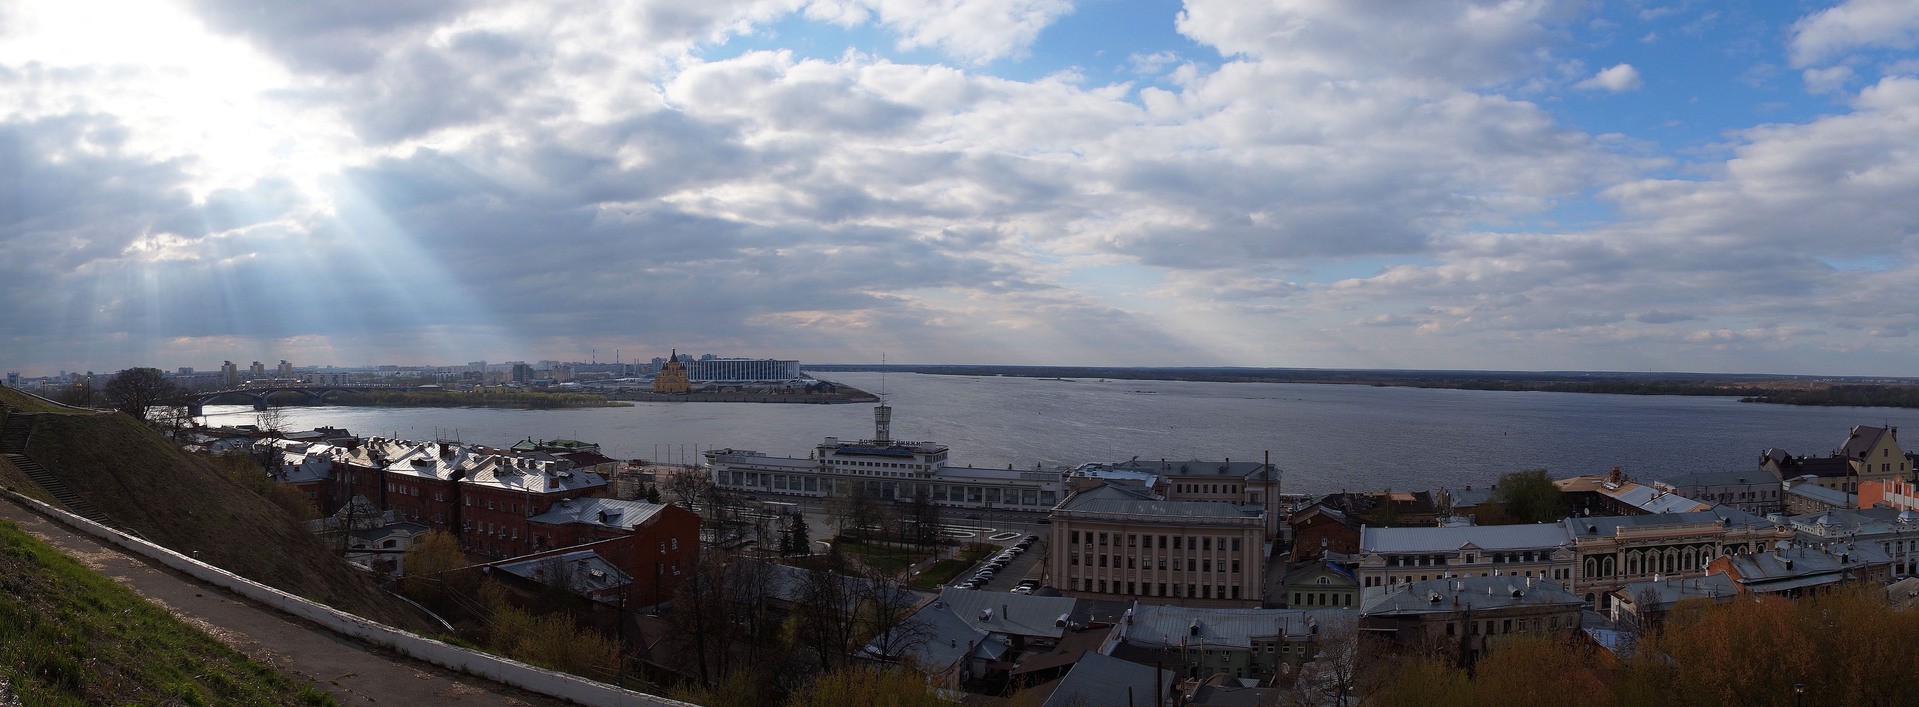 Панорама - вид на слияние Волги и Оки. Город Нижний Новгород